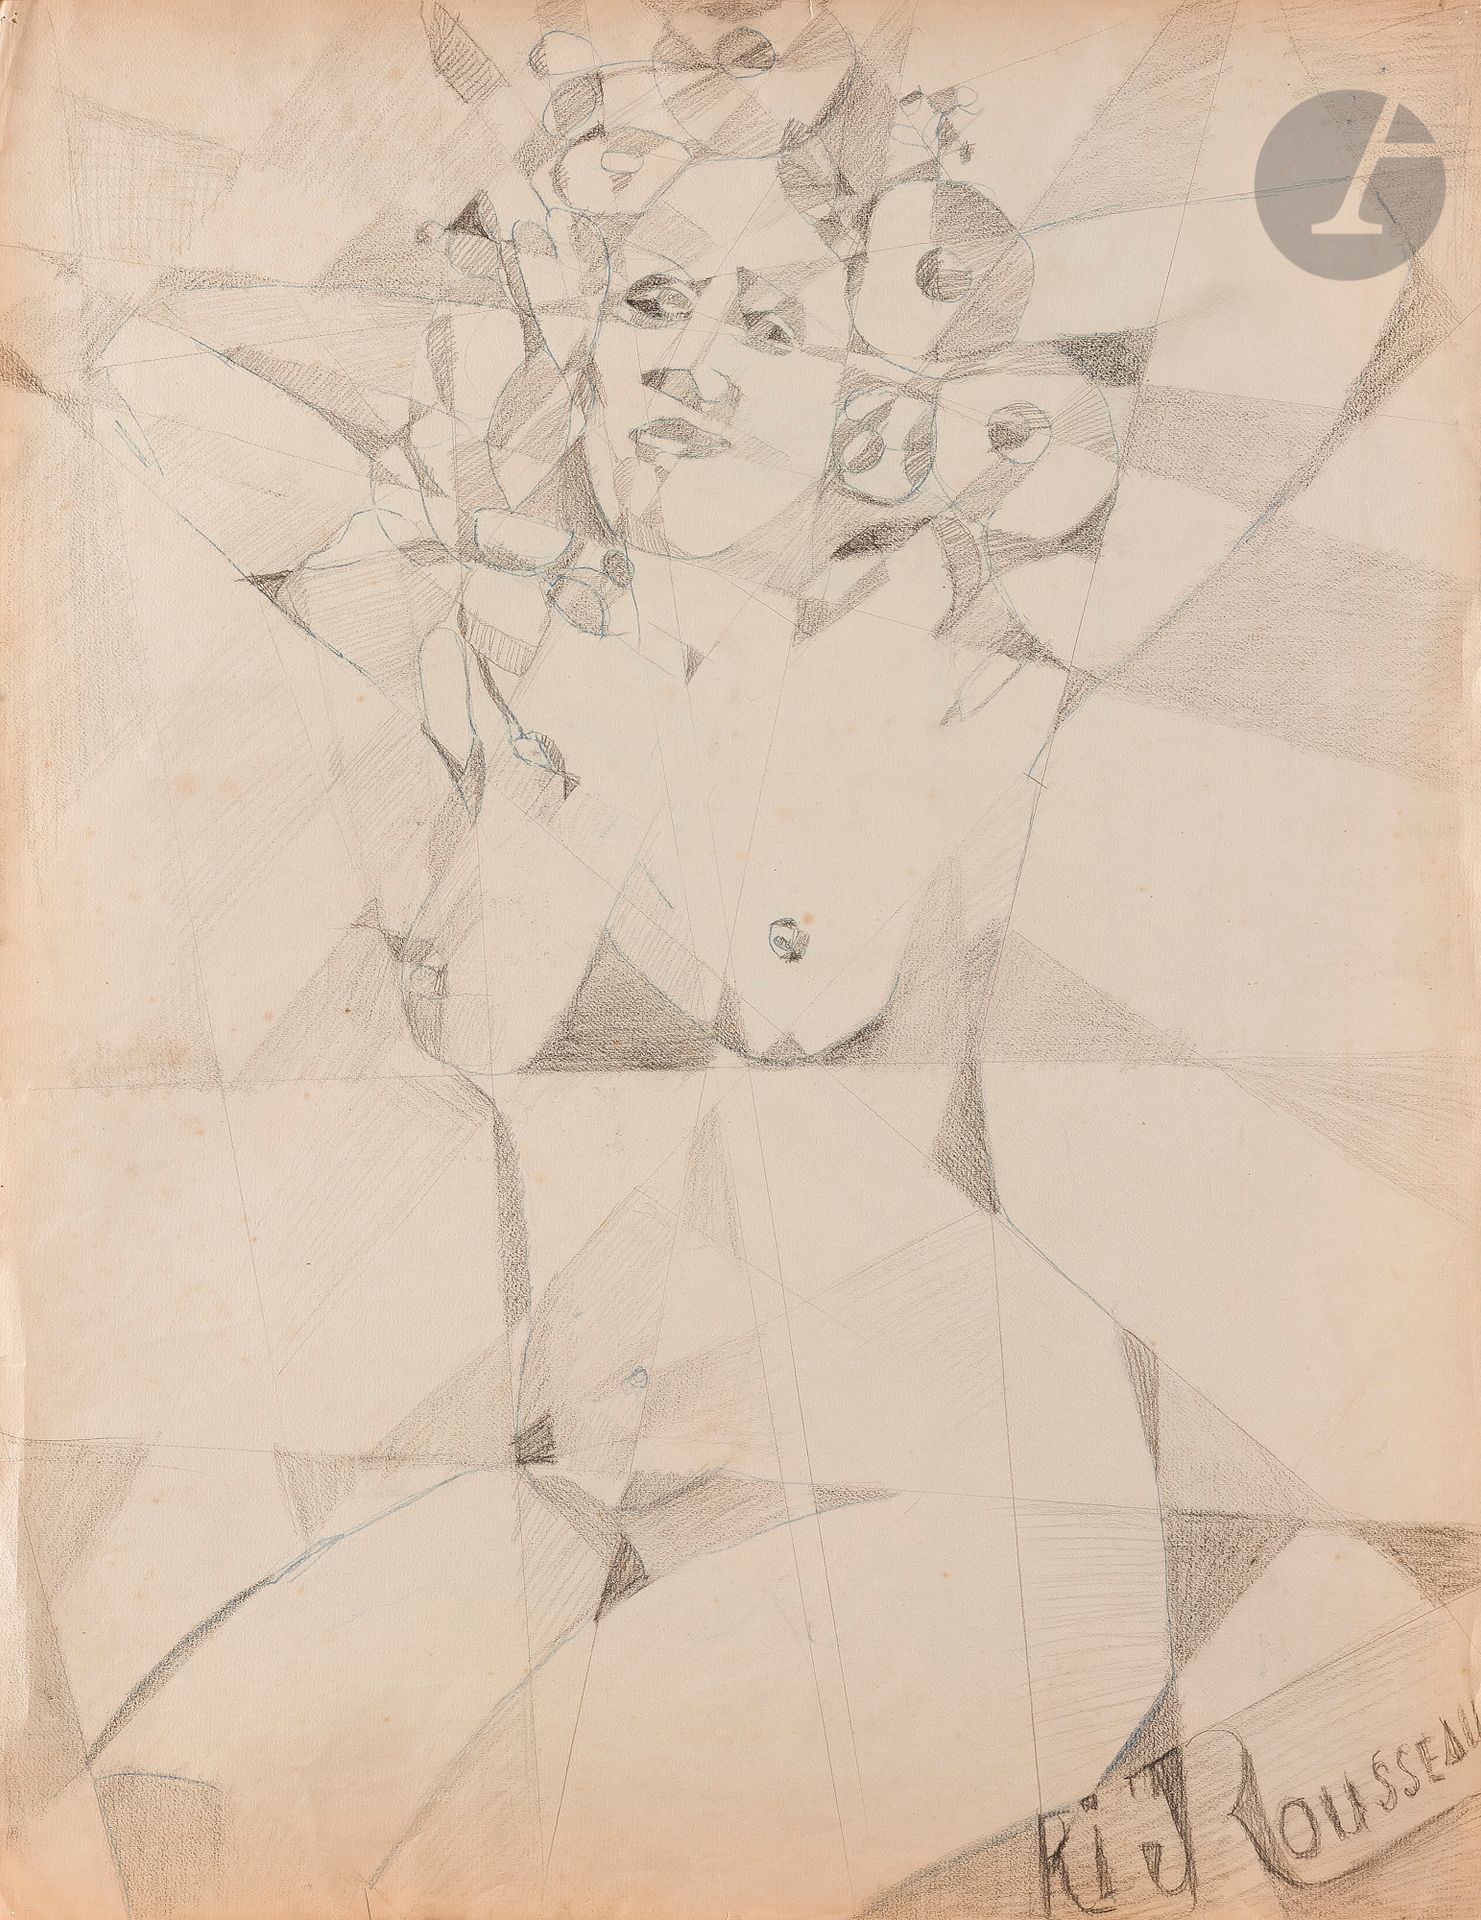 Null Jeanne RIJ-ROUSSEAU (1870-1956
)女性
裸体黑色
铅笔
和蓝色铅笔

。


右下角有签名
63 x 48,5 cm